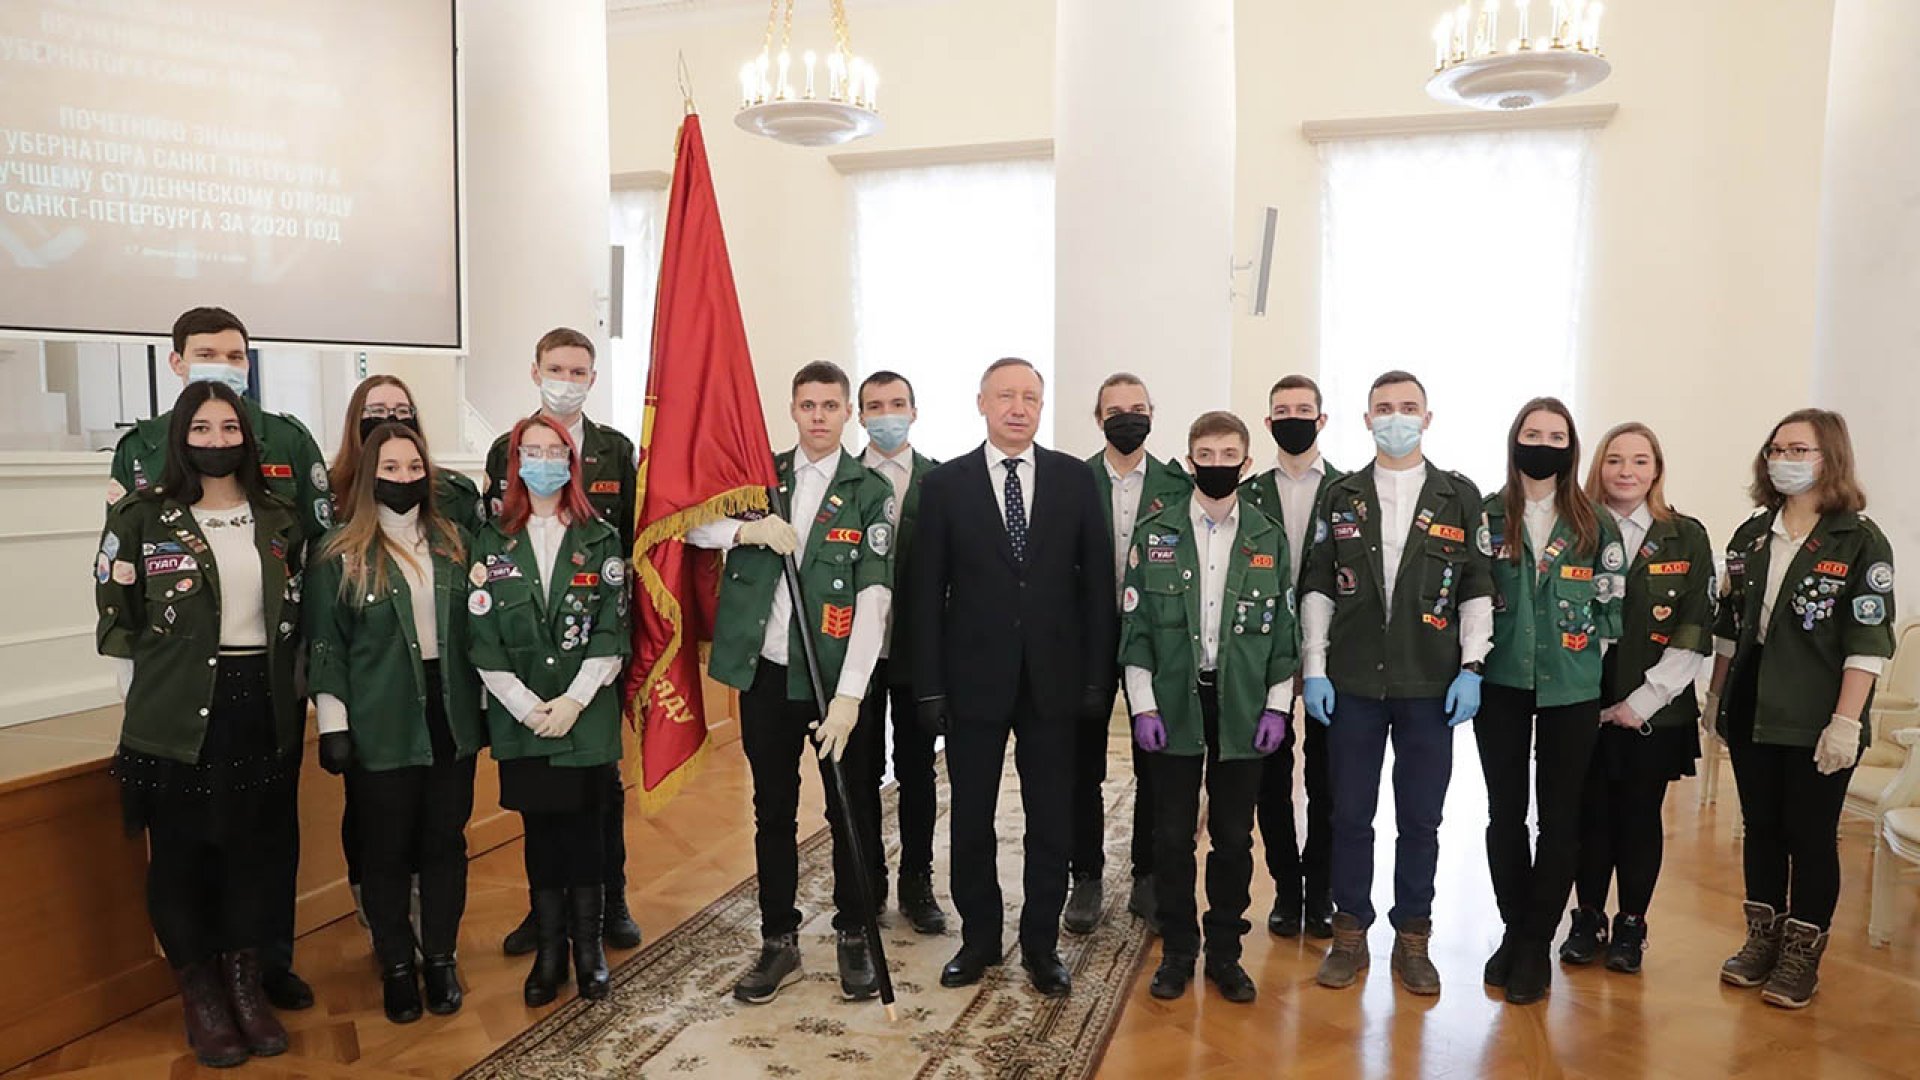 Лучший отряд города получил почётное знамя Губернатора Санкт-Петербурга